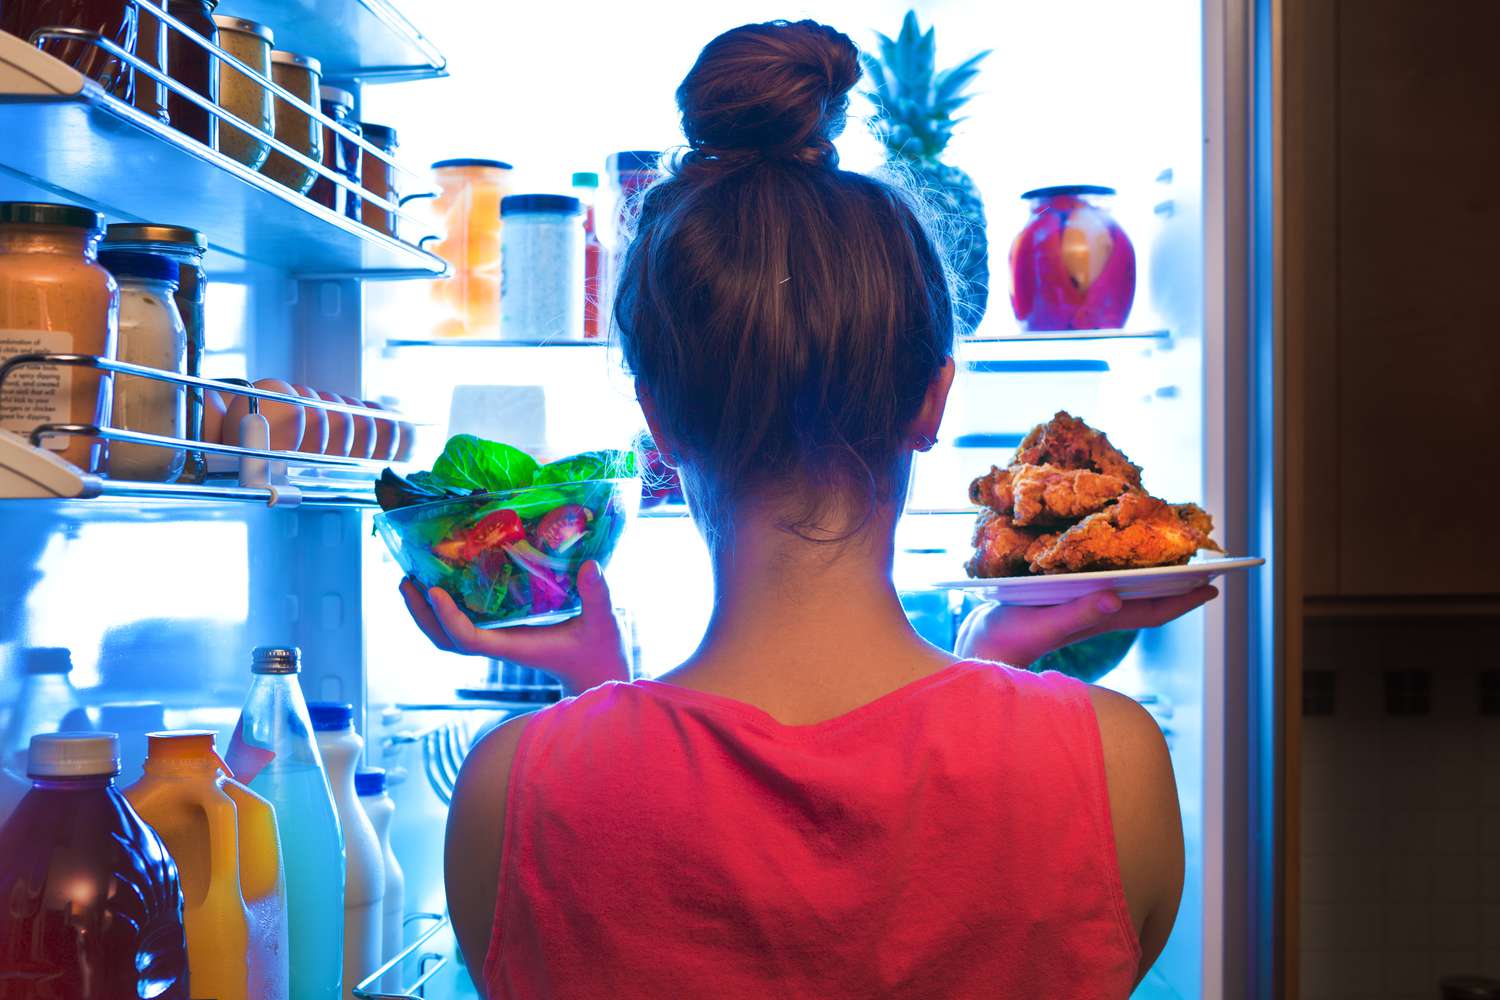 Mulher tirando comida desembrulhada da geladeira.